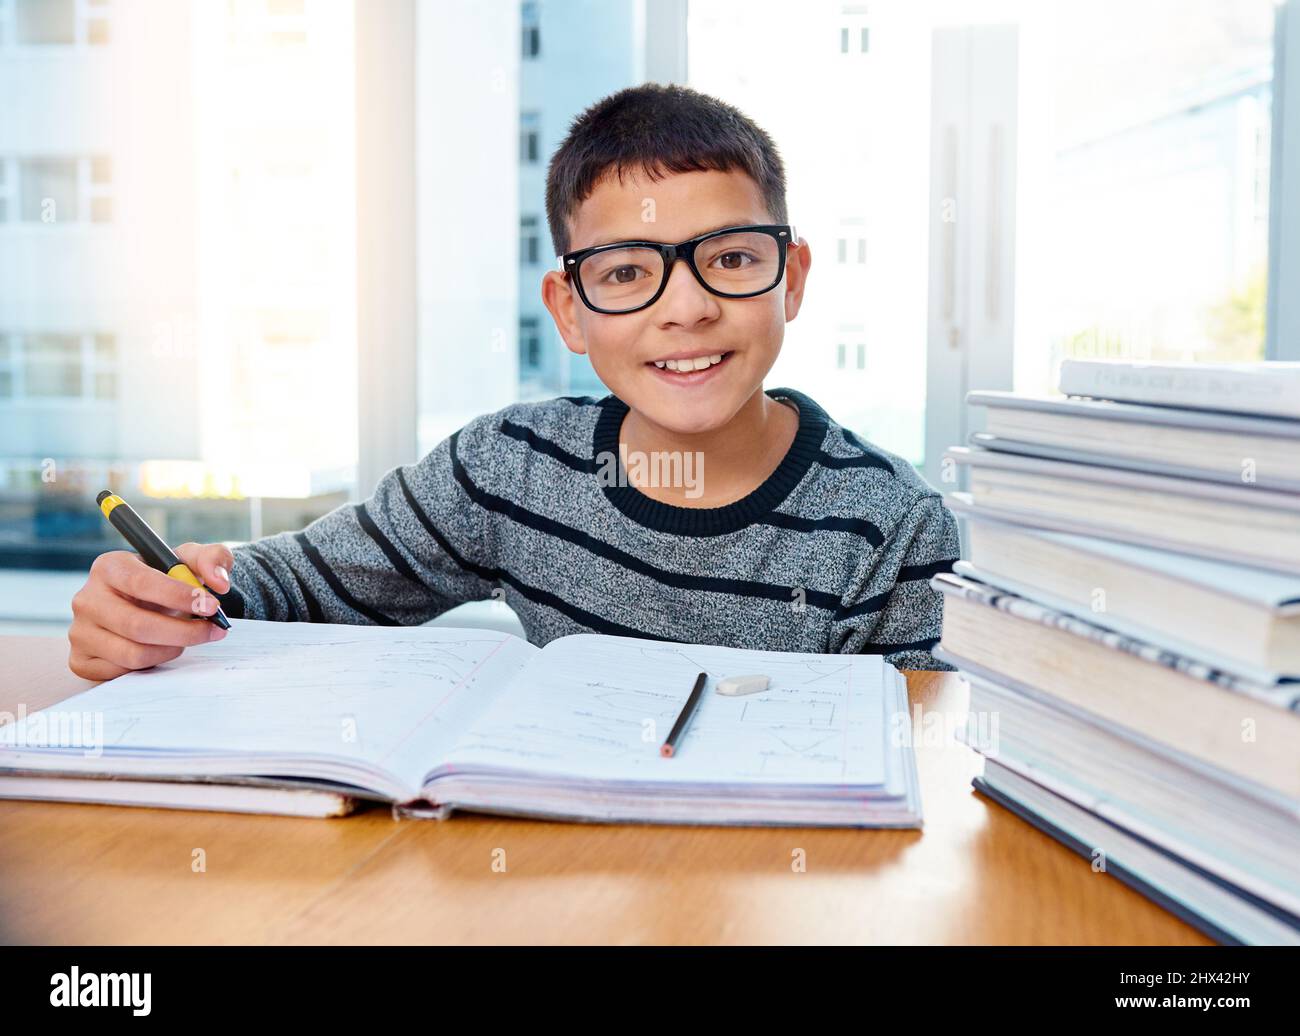 Er weiß bereits, wie wichtig Bildung für seine Zukunft ist. Porträt eines entschlossenen Jungen, der zu Hause seine Hausaufgaben macht. Stockfoto